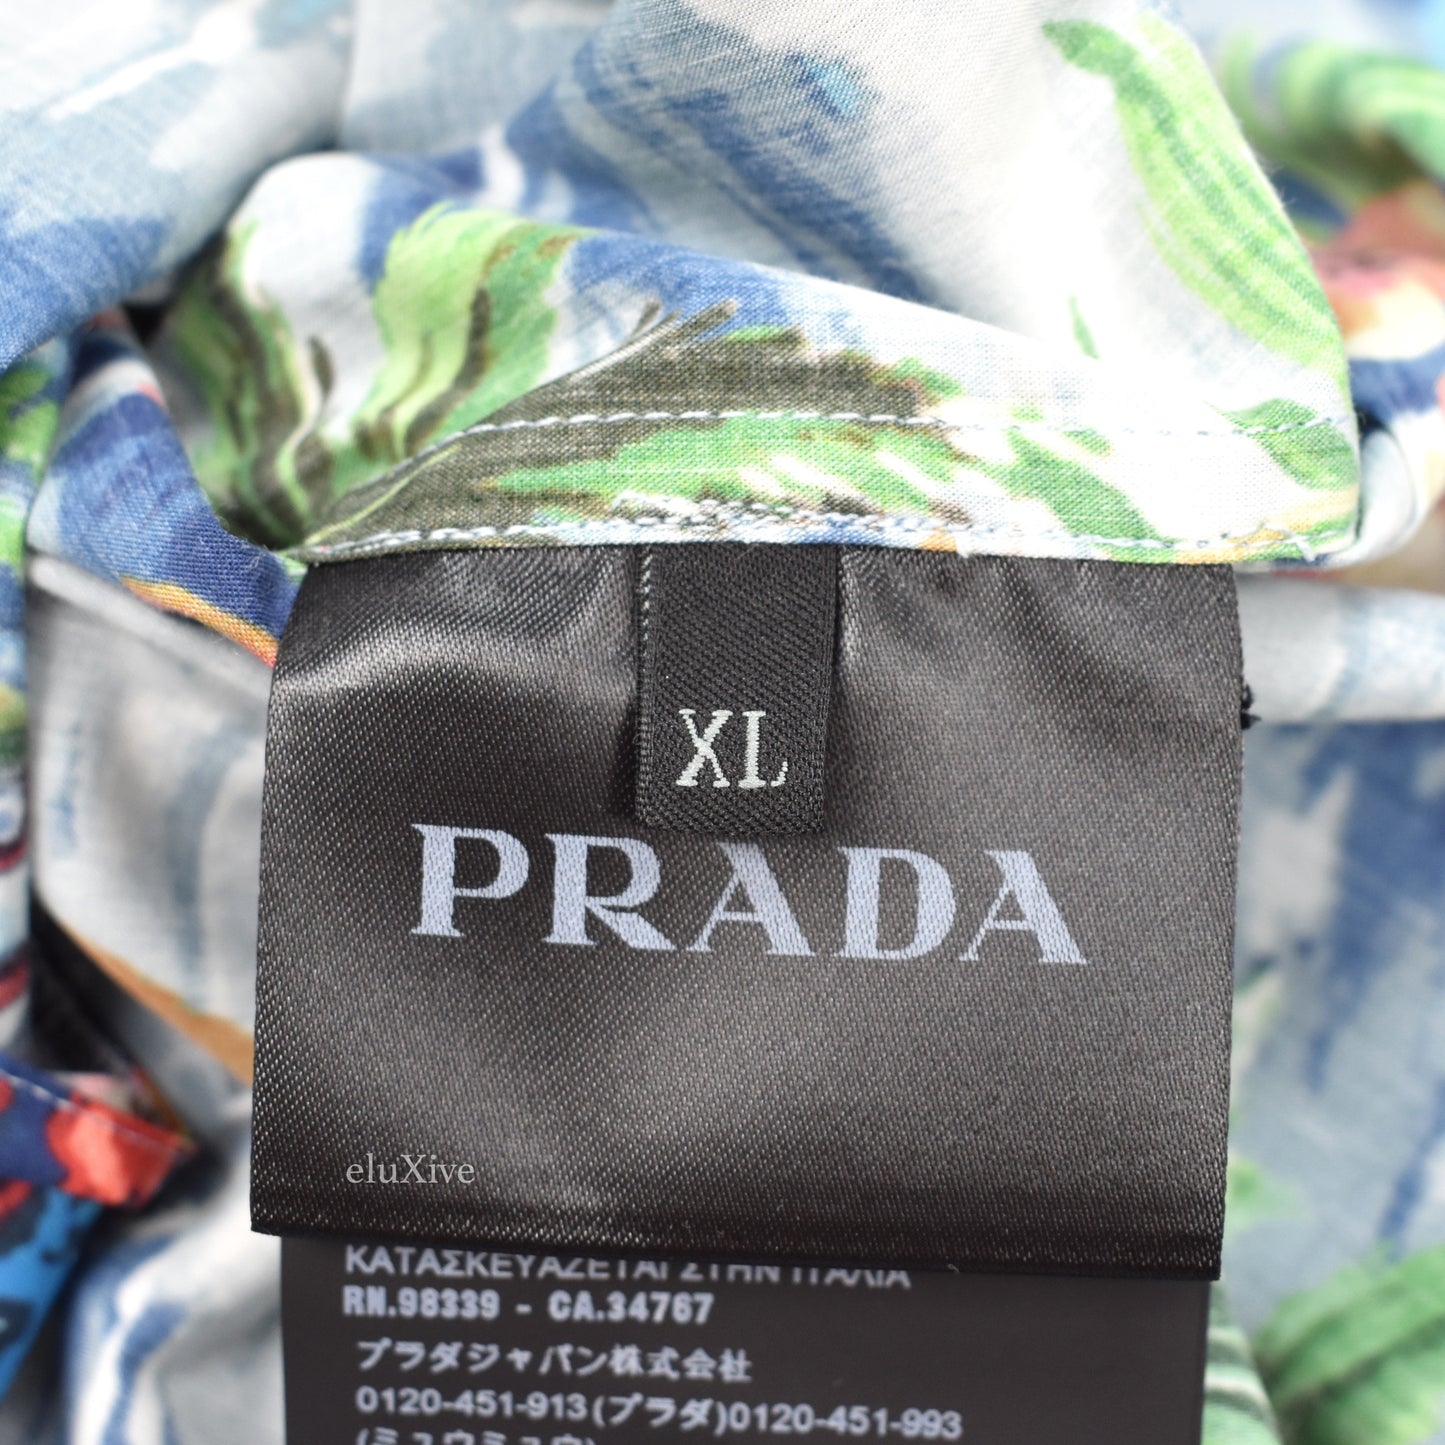 Prada - Paradise Print Club Shirt